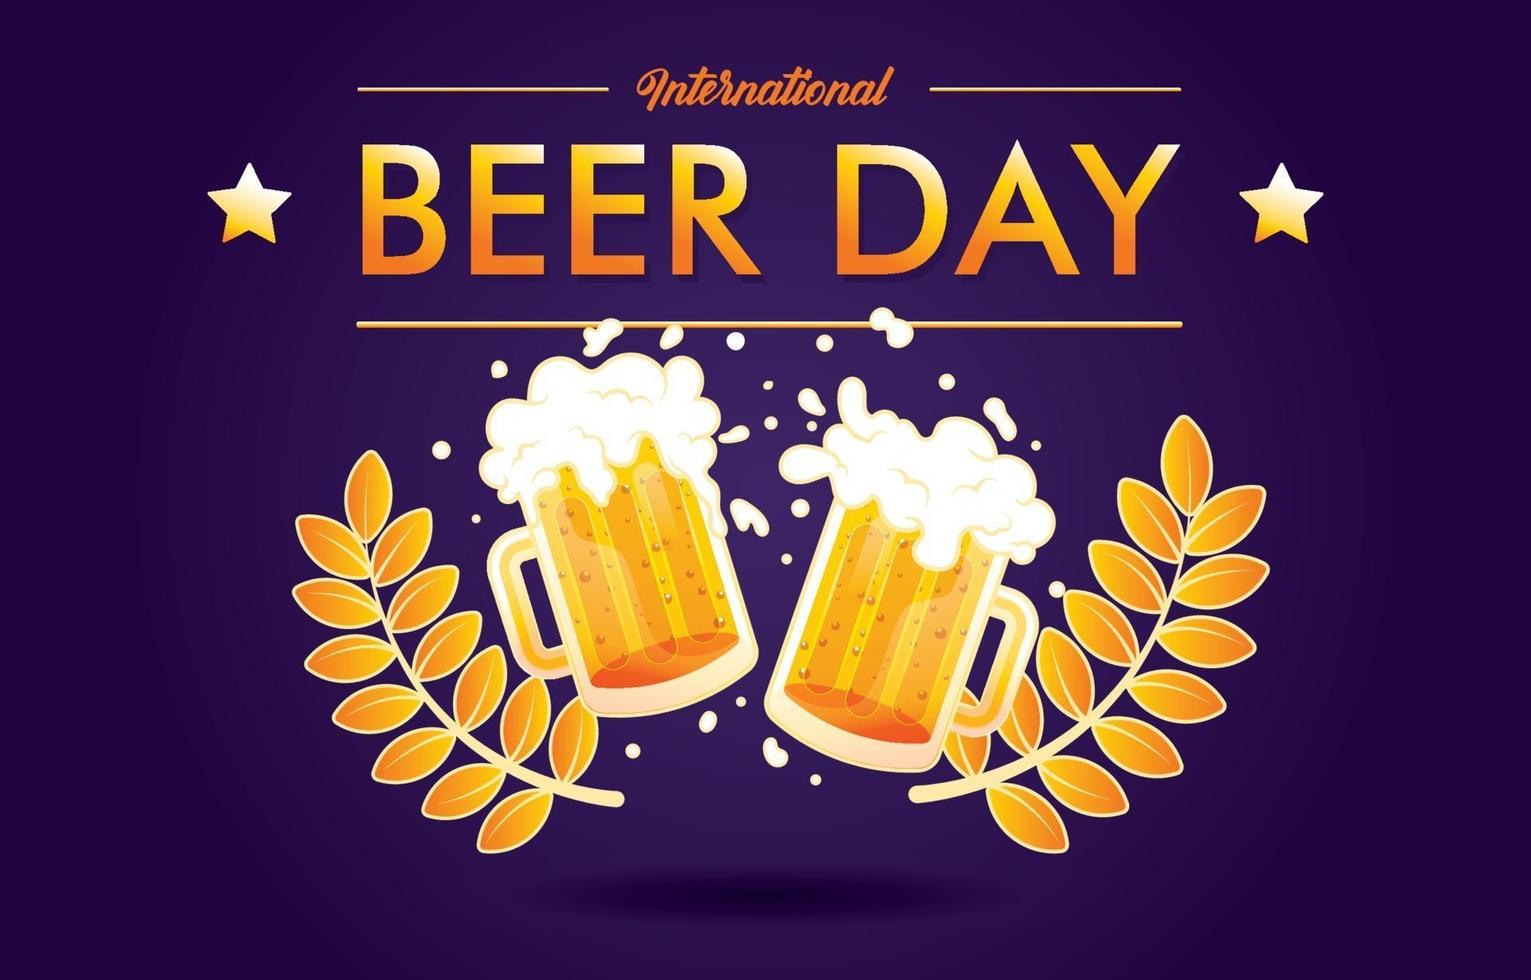 International Beer Day Cheers vector